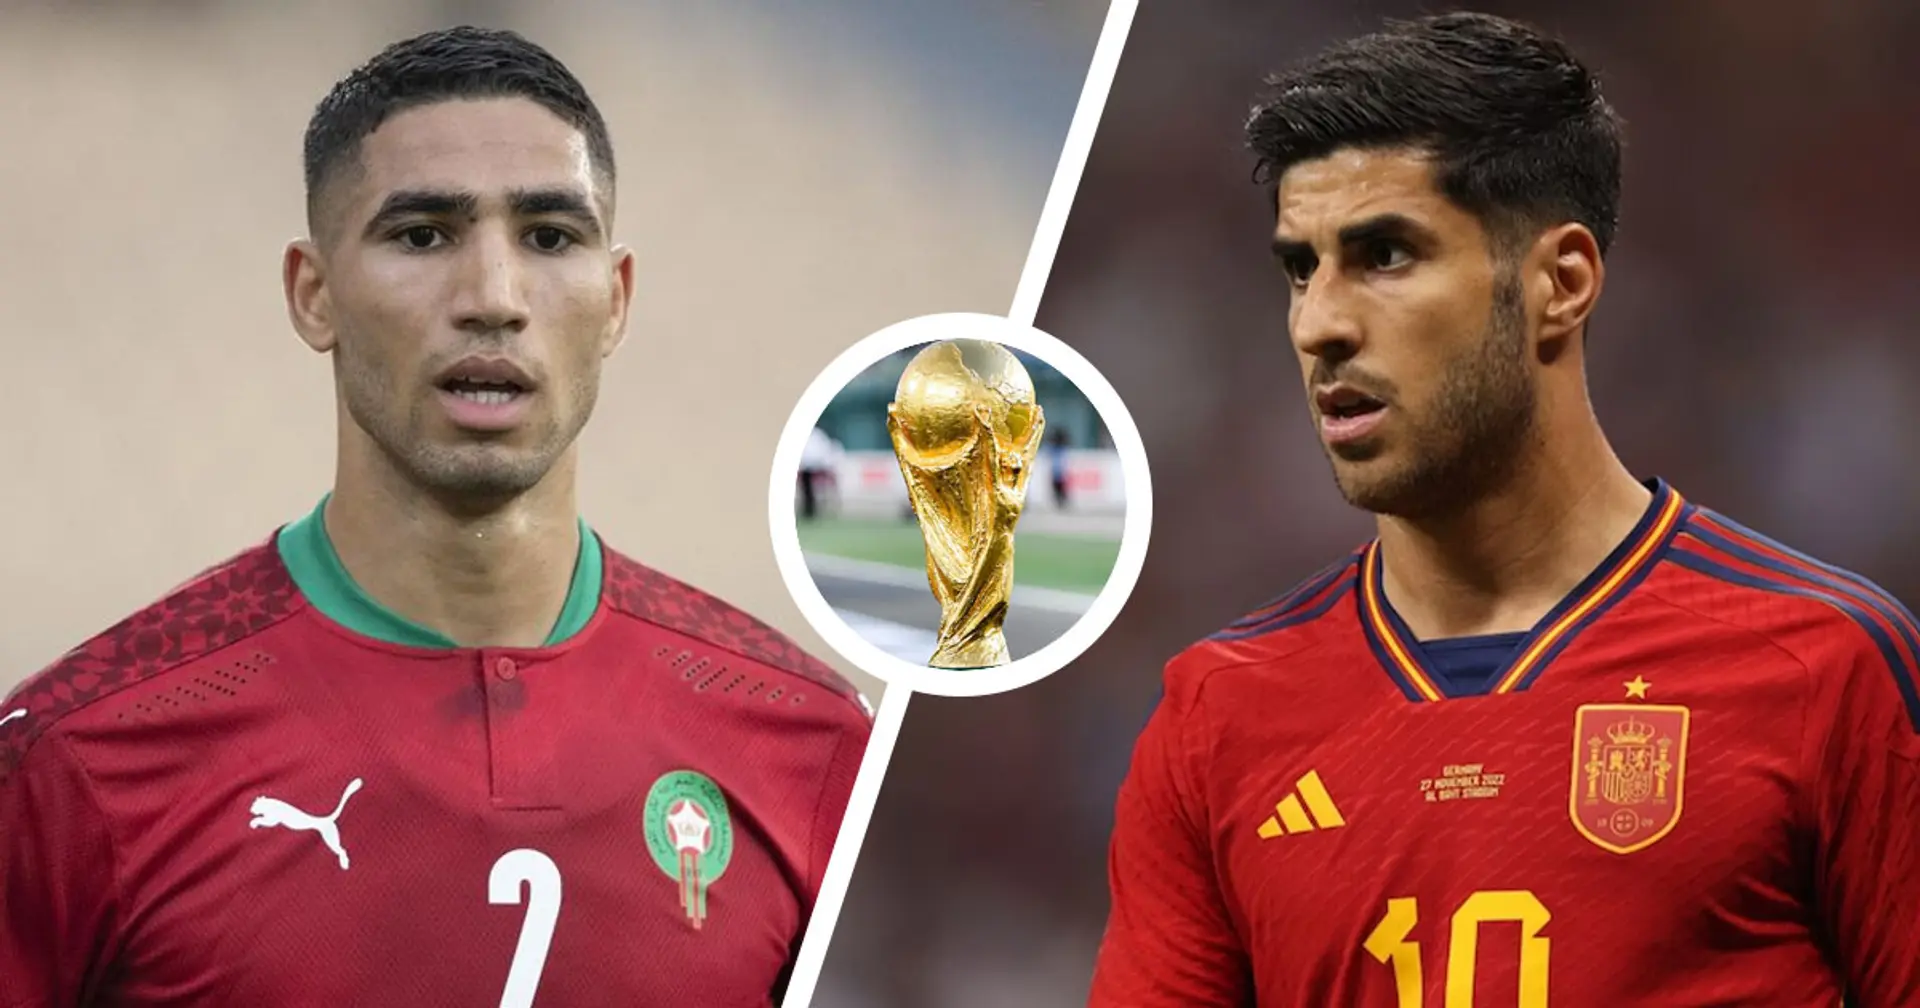 Marocco vs Spagna: le formazioni ufficiali delle squadre per la partita della Coppa del Mondo Qatar 2022 